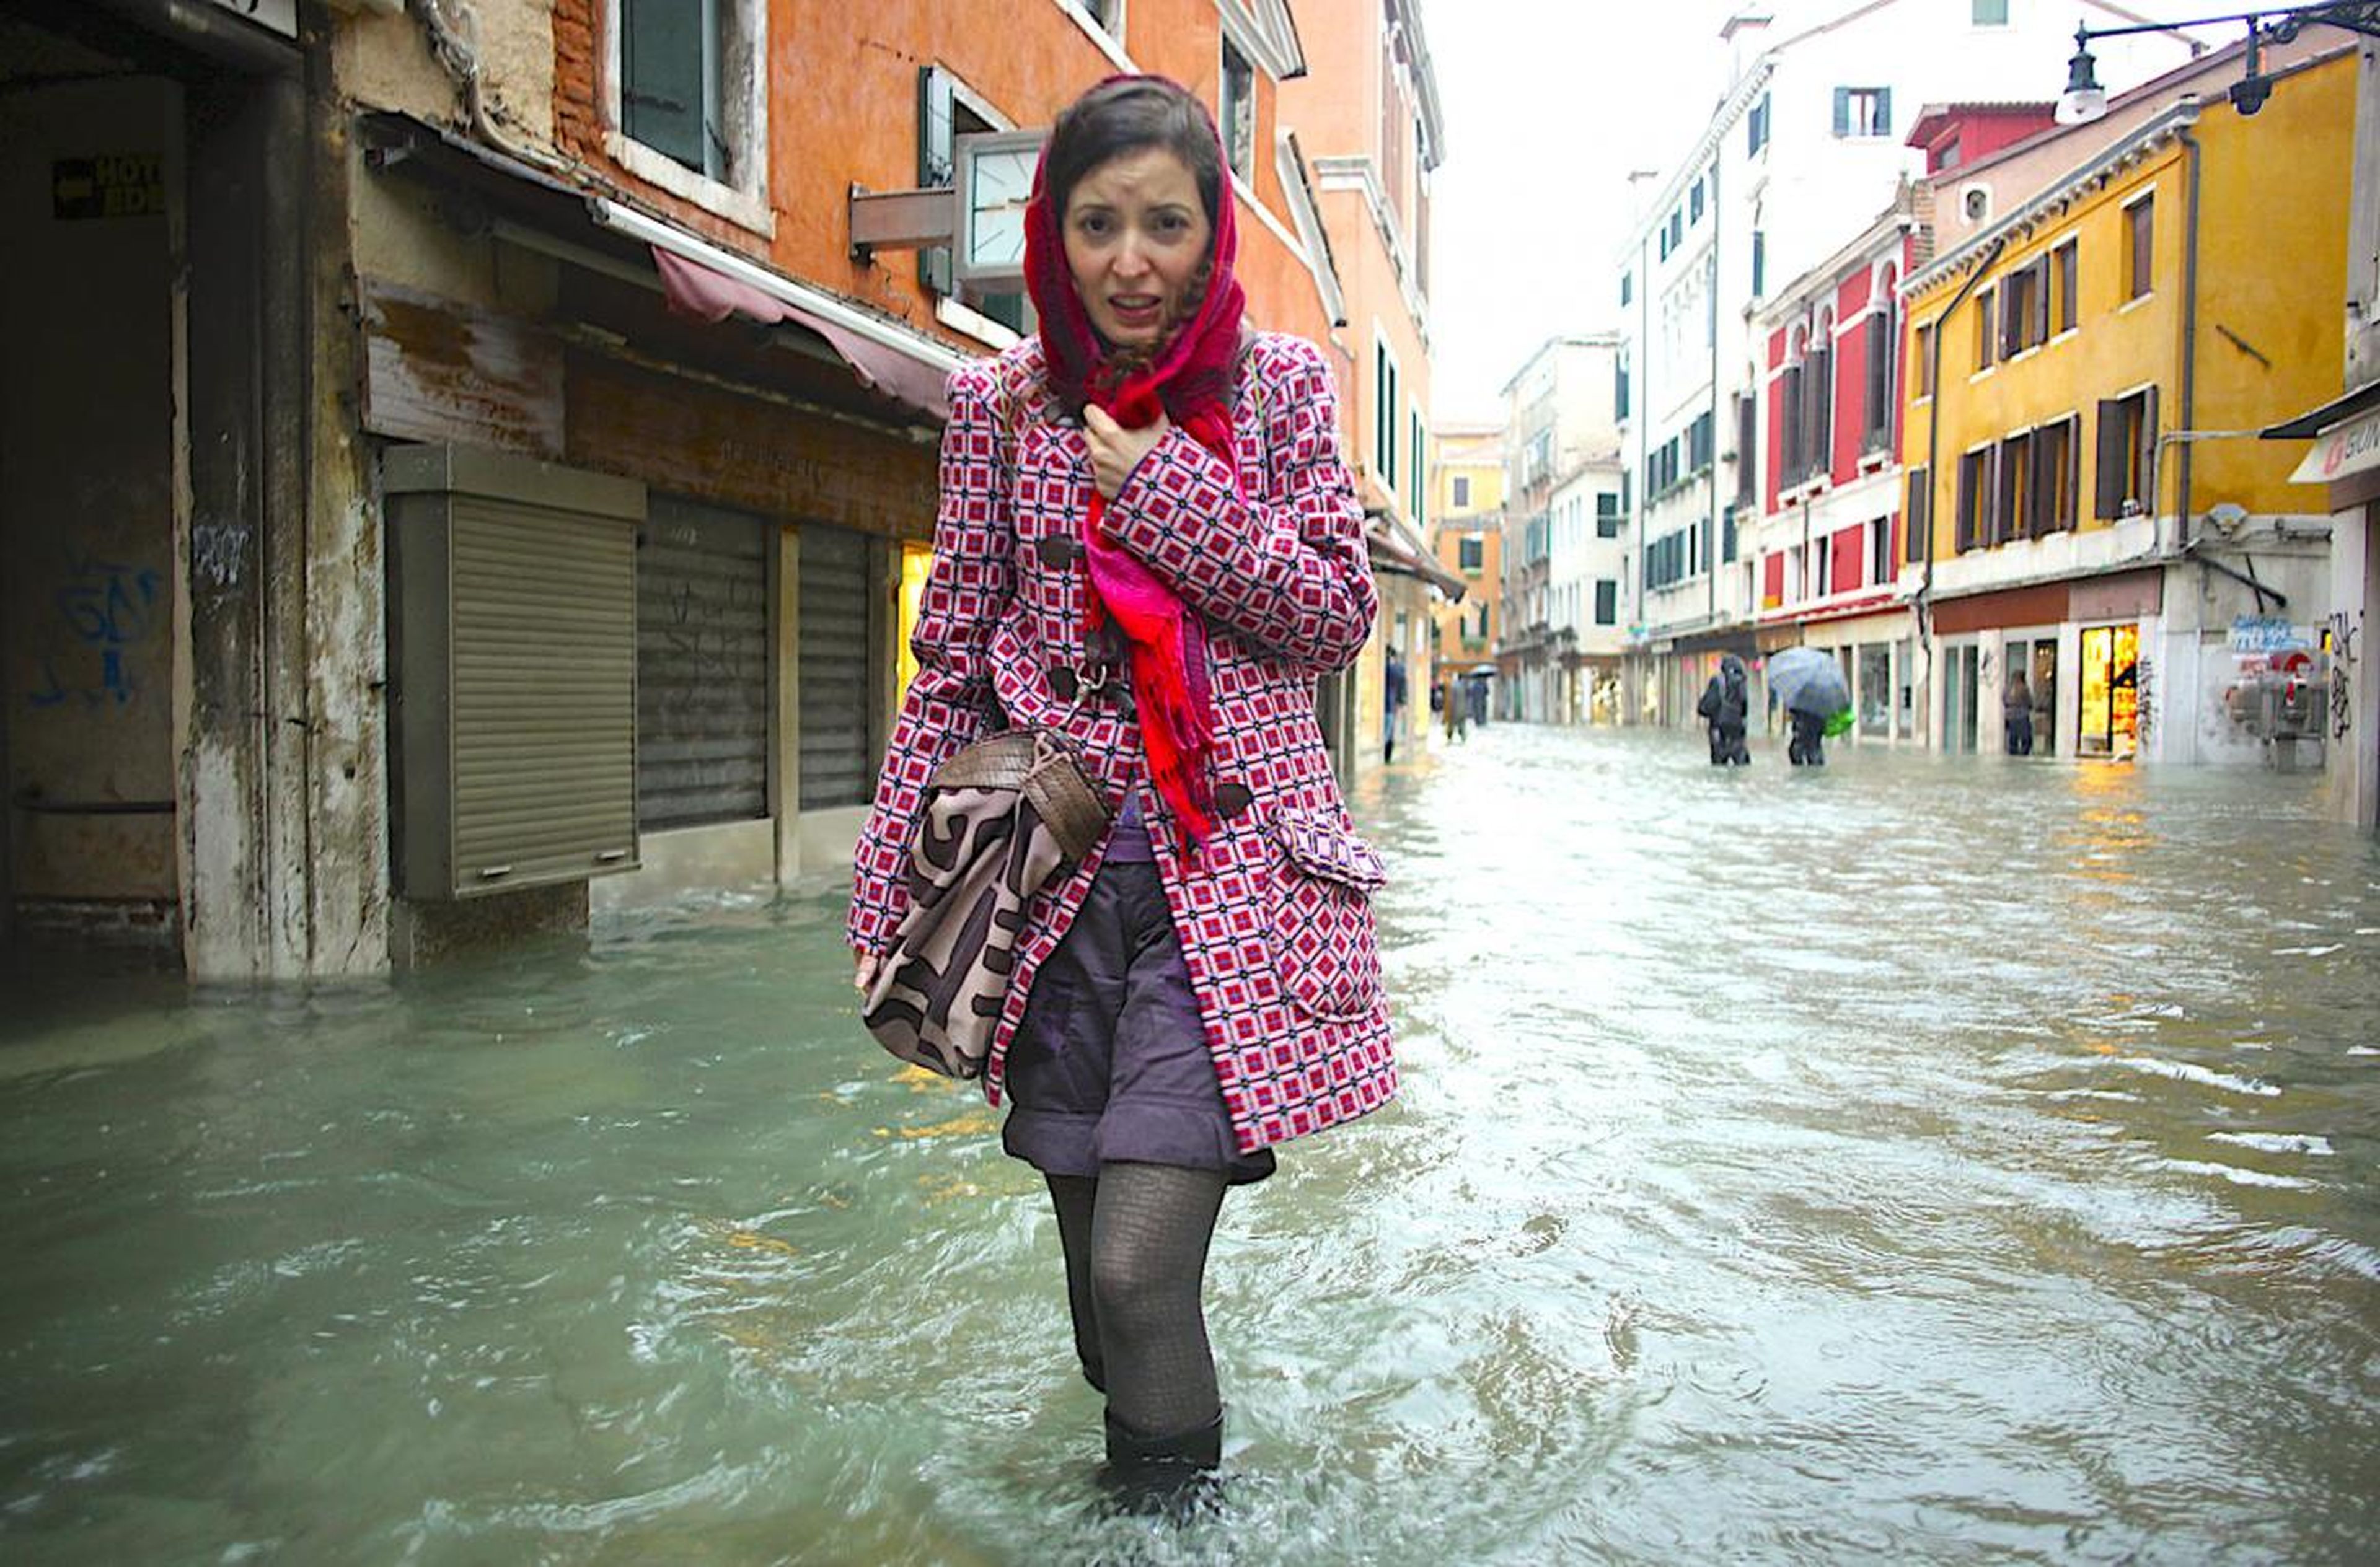 Una mujer intenta caminar por una calle inundada en Venecia.